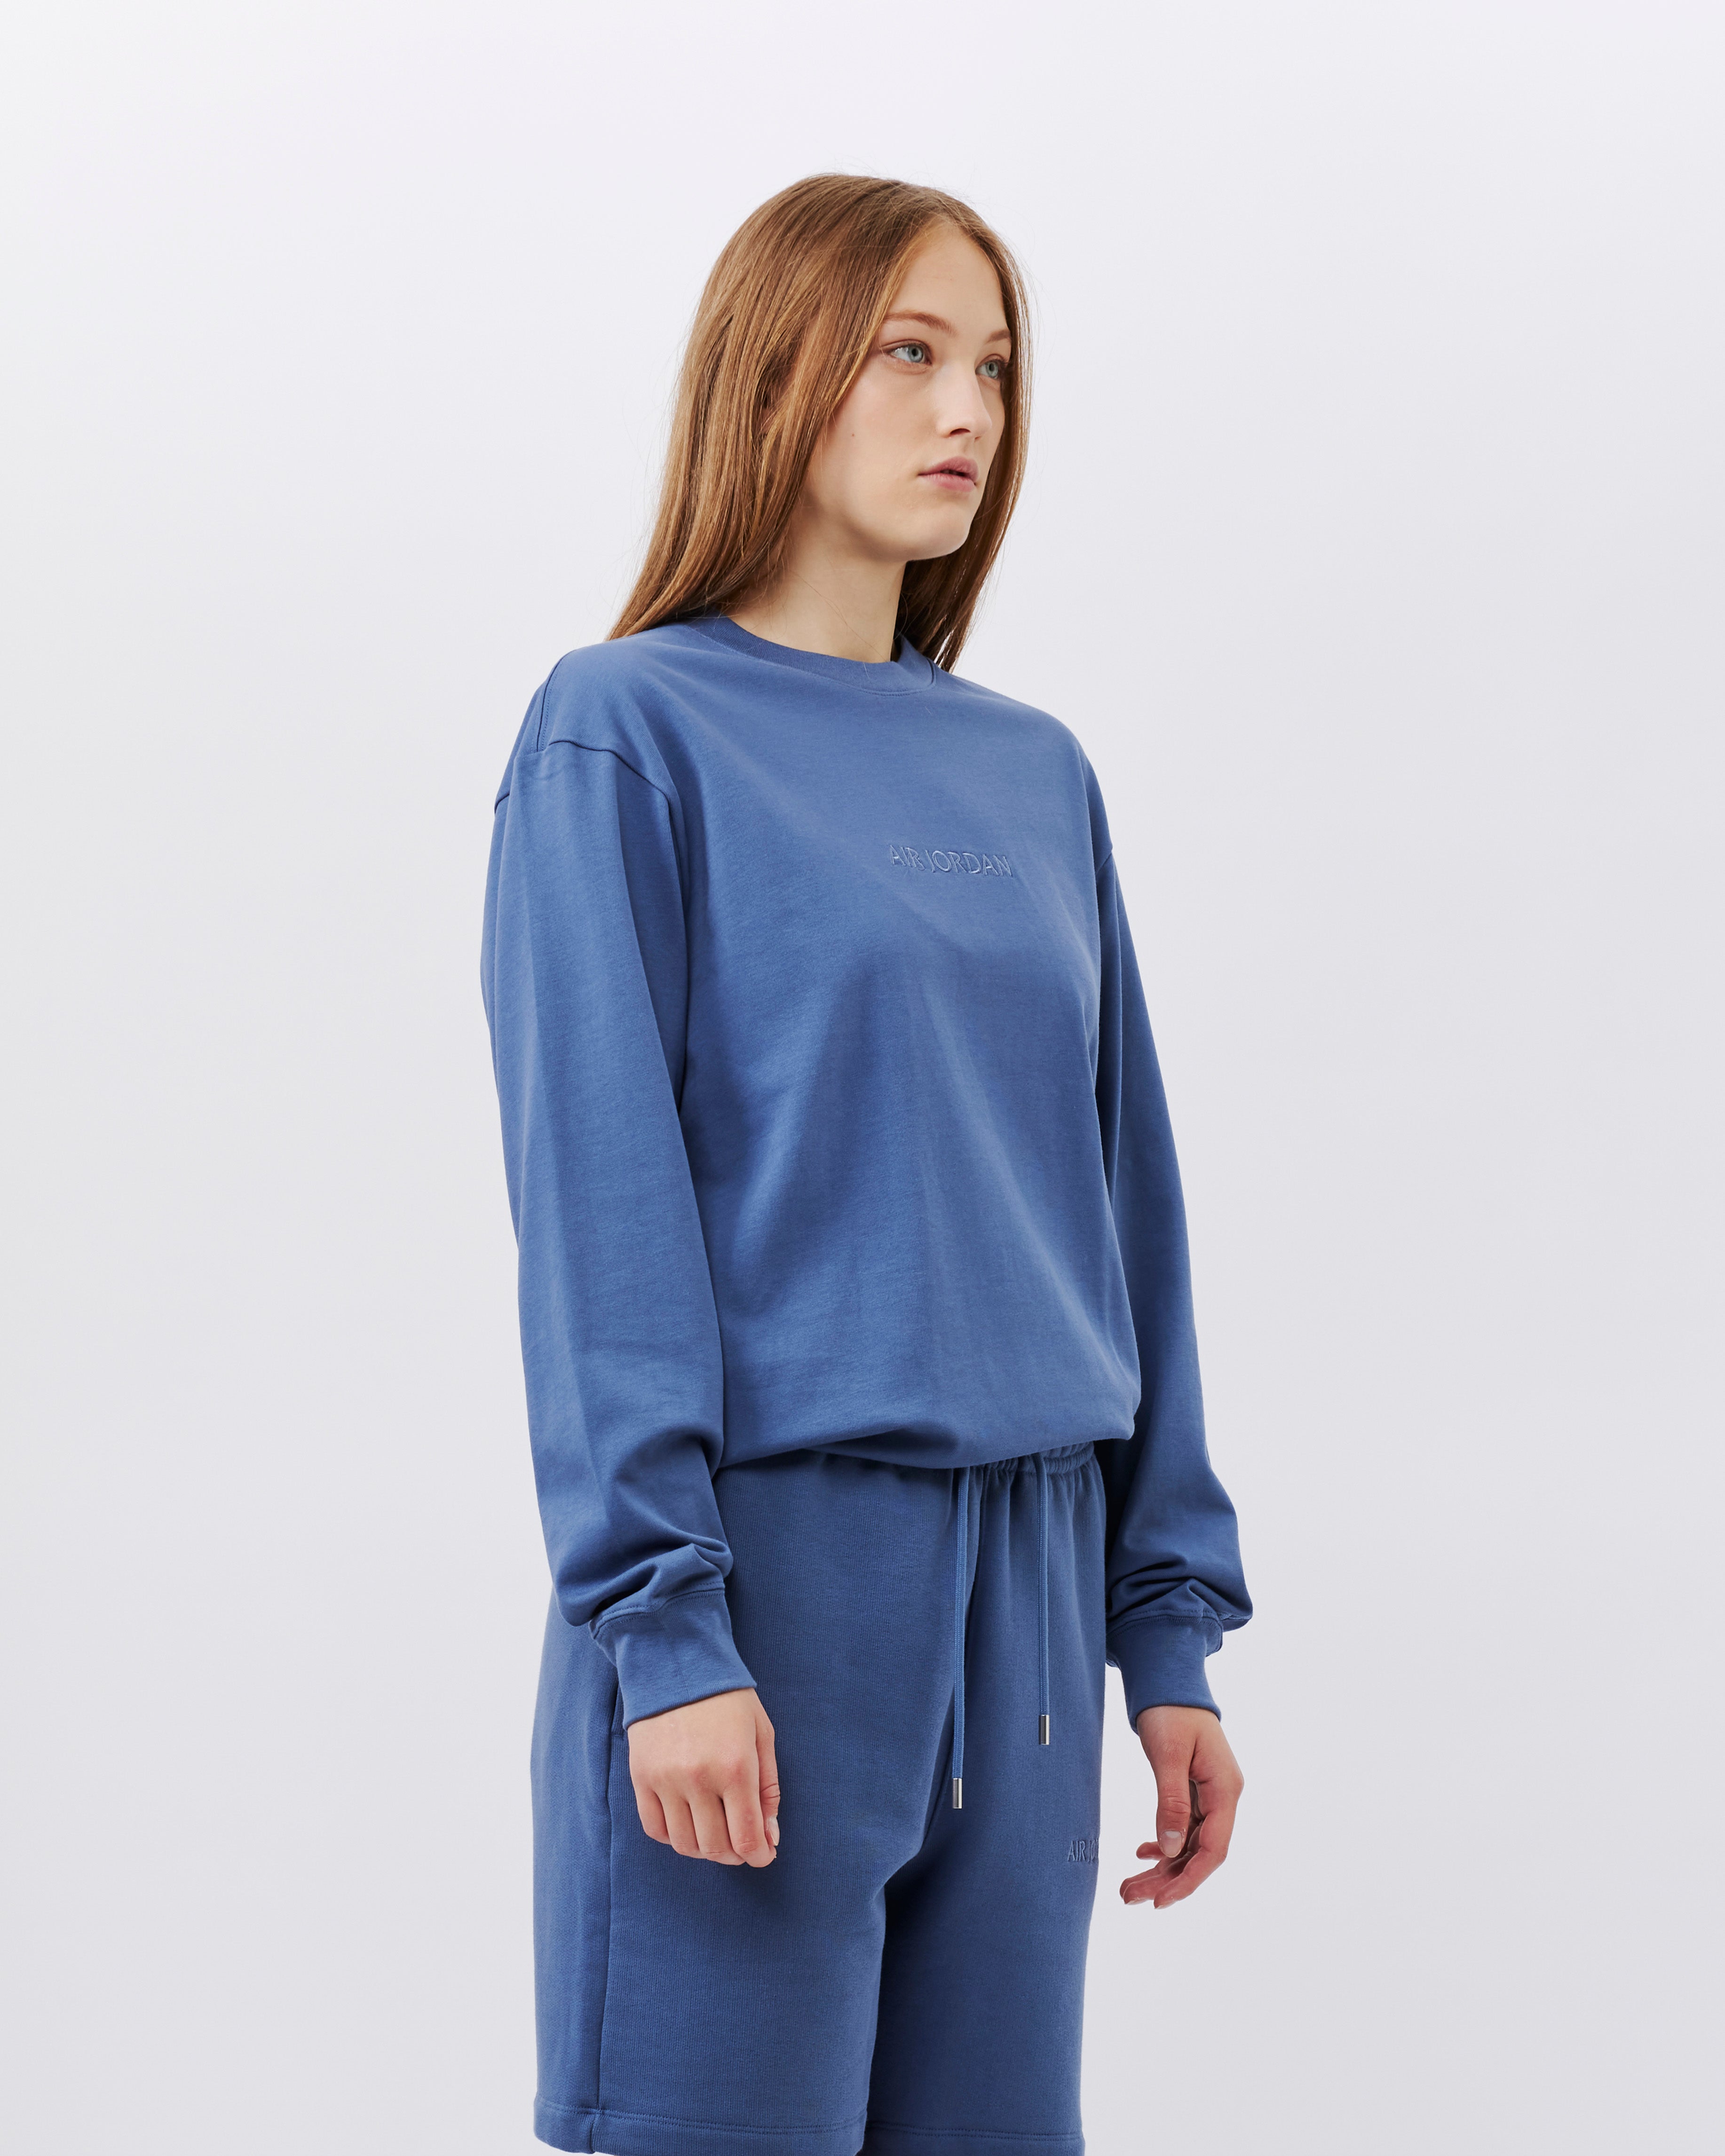 Jordan Brand Air Jordan Long Sleeve T-shirt DIFFUSED BLUE FJ0702-491